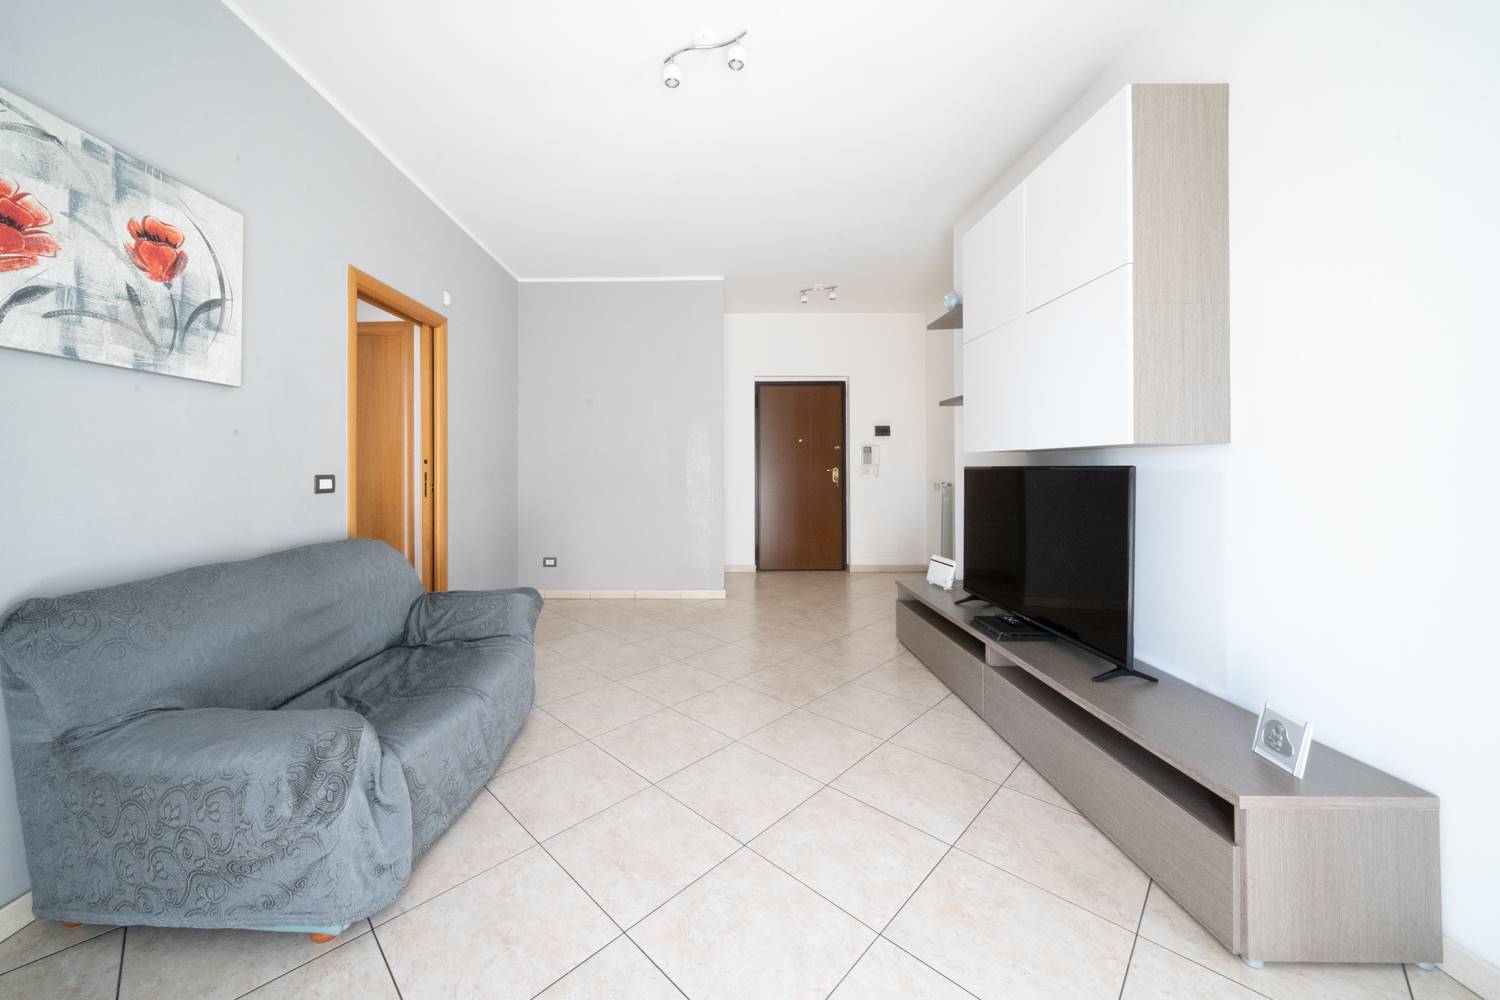 Appartamento in vendita a Bitonto, 3 locali, zona Località: MARIOTTO, prezzo € 130.000 | CambioCasa.it